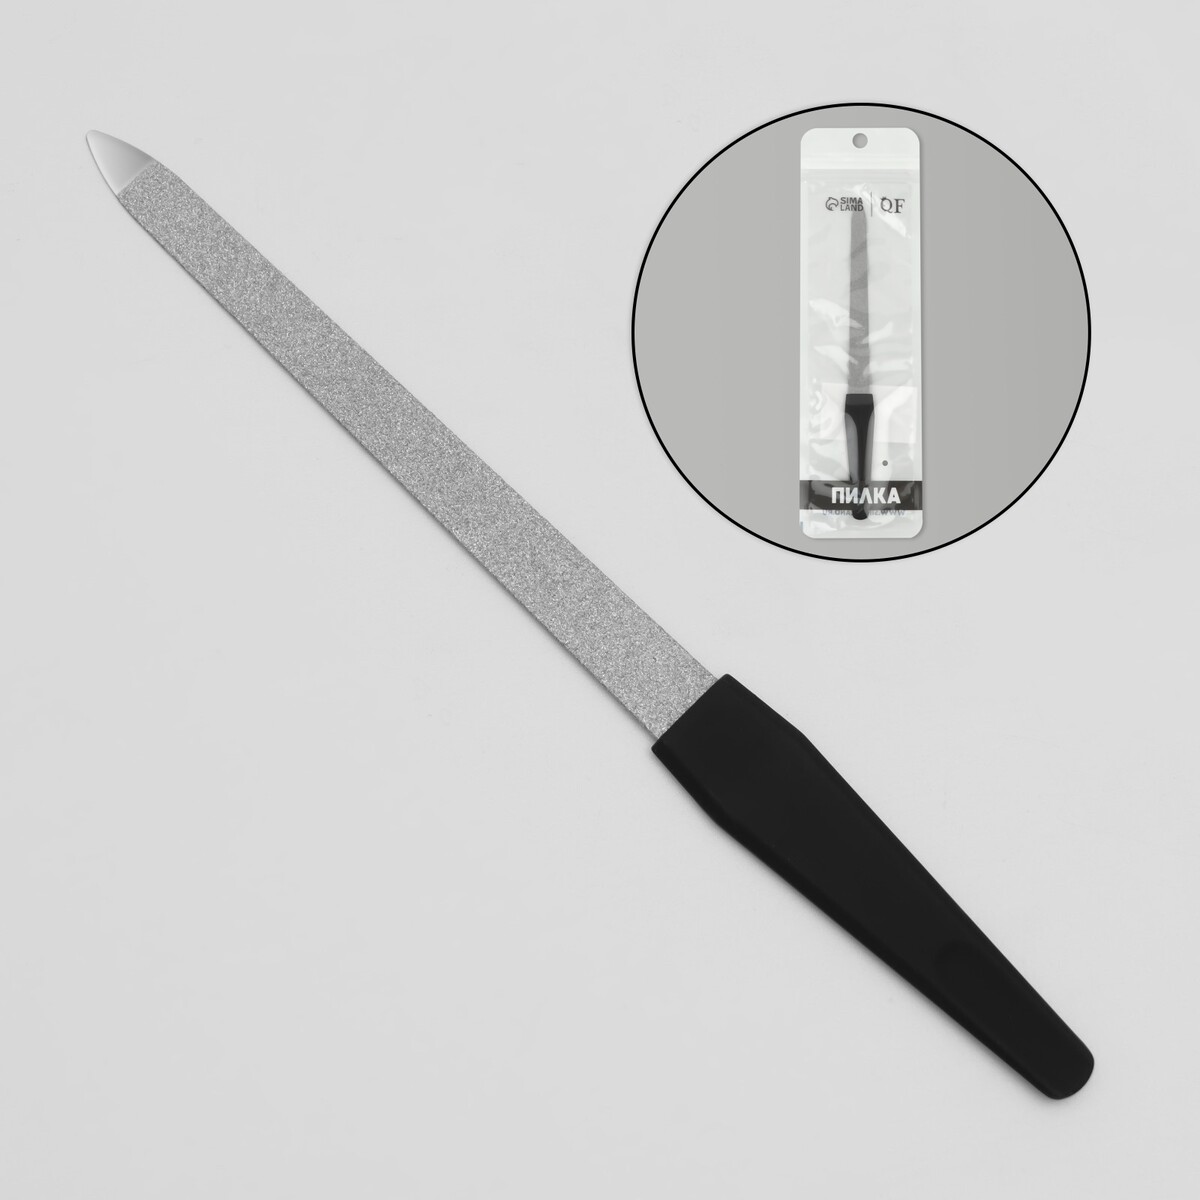 Пилка металлическая для ногтей, прорезиненная ручка, 17 см, цвет серебристый/черный пилка металлическая для ногтей прорезиненная ручка 17 см серебристый